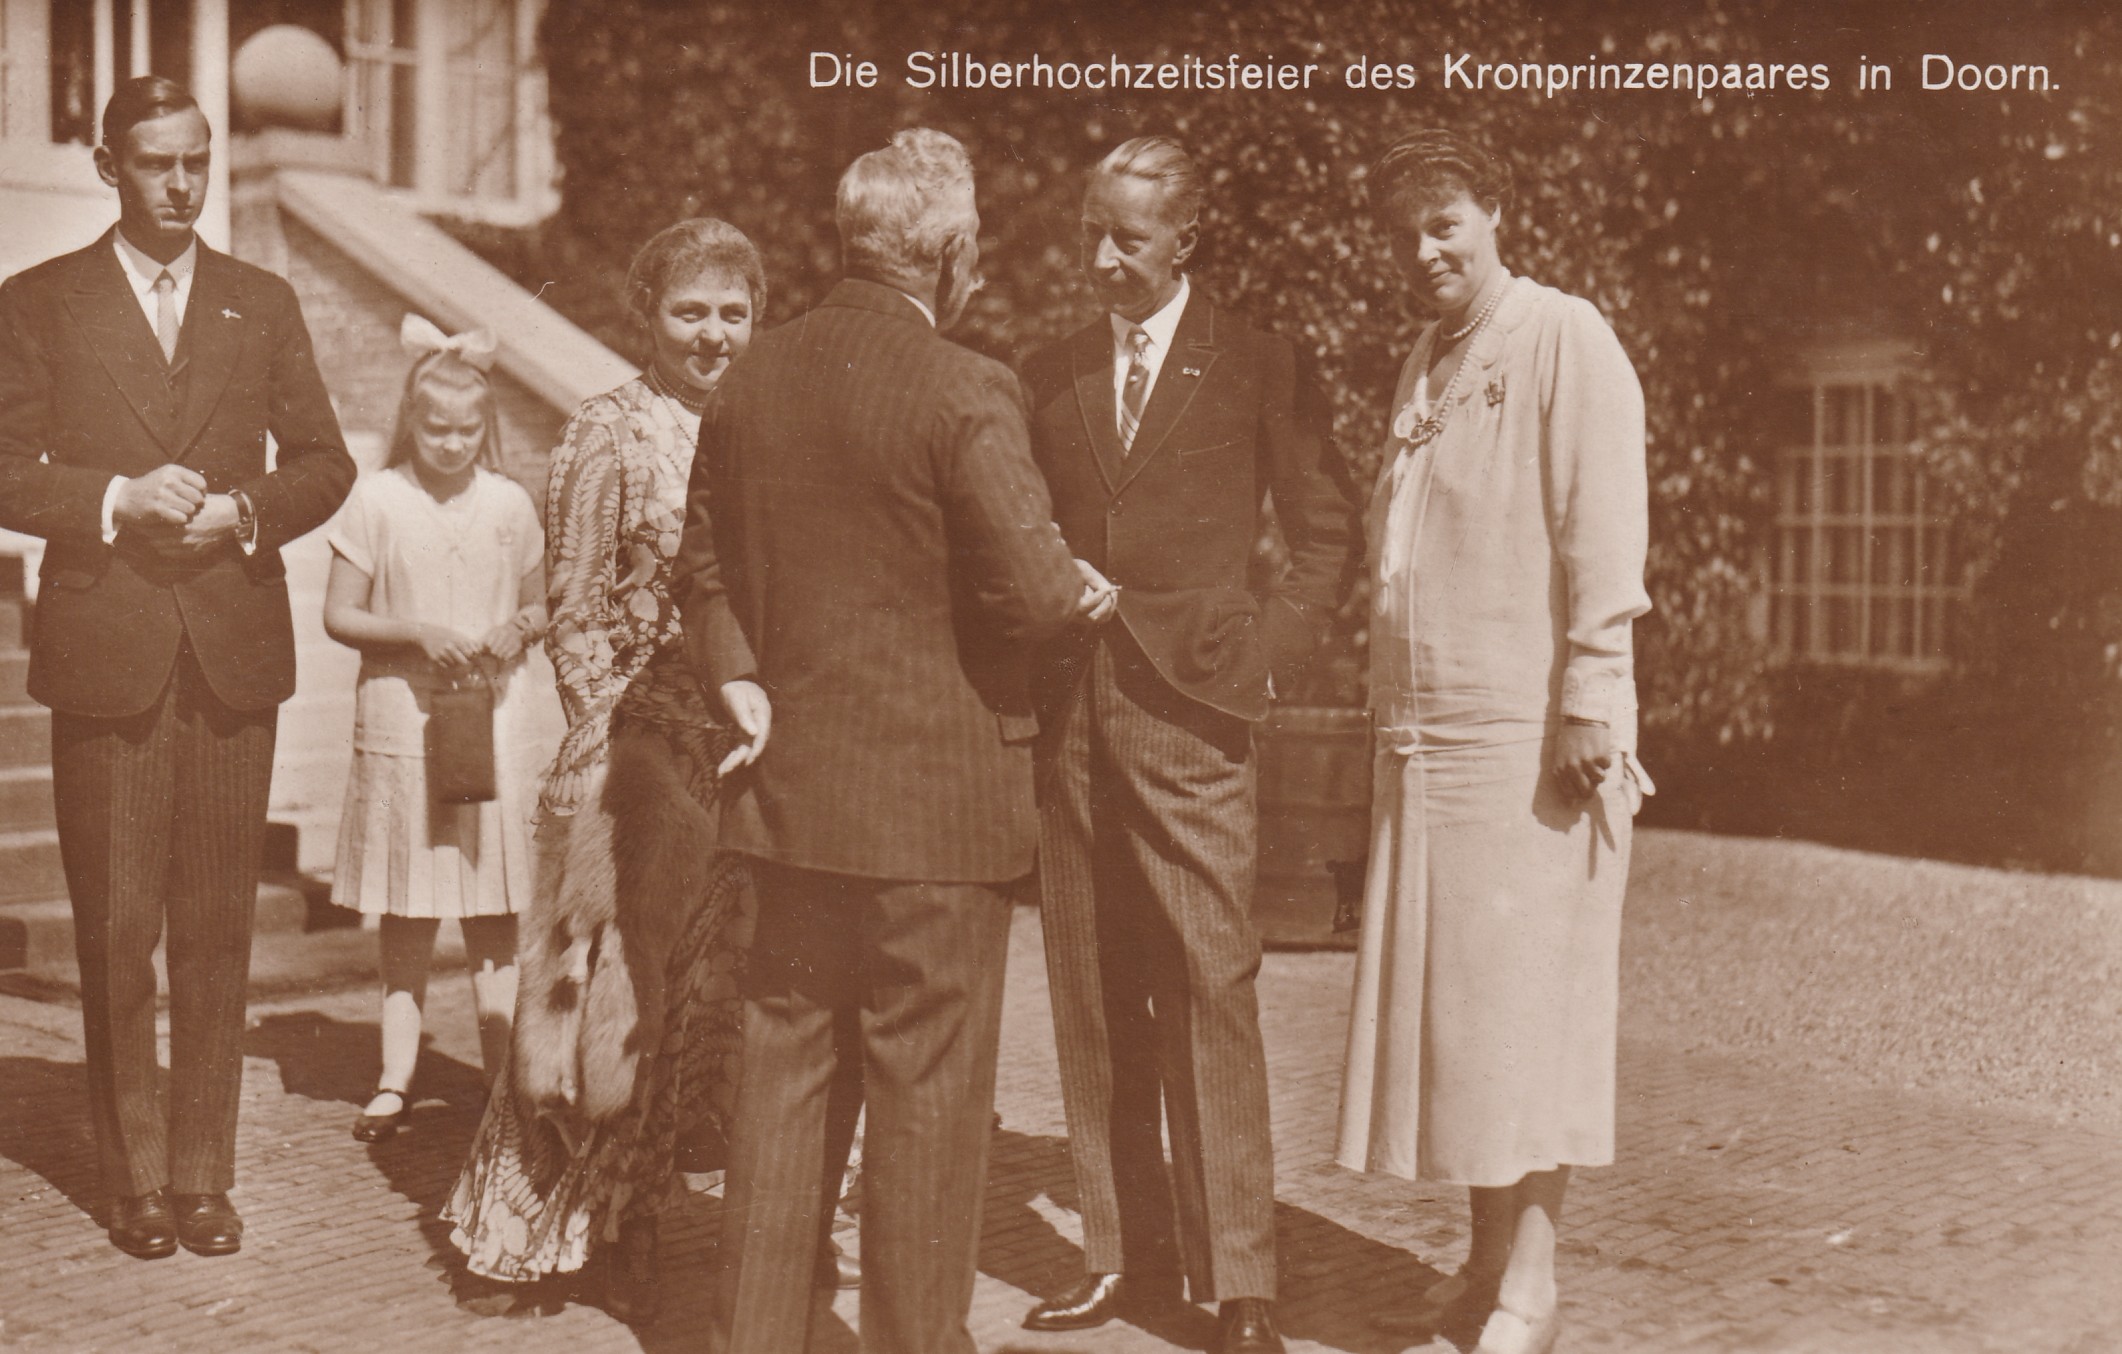 Bildpostkarte mit Foto anlässlich der Silberhochzeit des ehemaligen Kronprinzenpaares in Doorn (Niederlande), 1930 (Schloß Wernigerode GmbH RR-F)